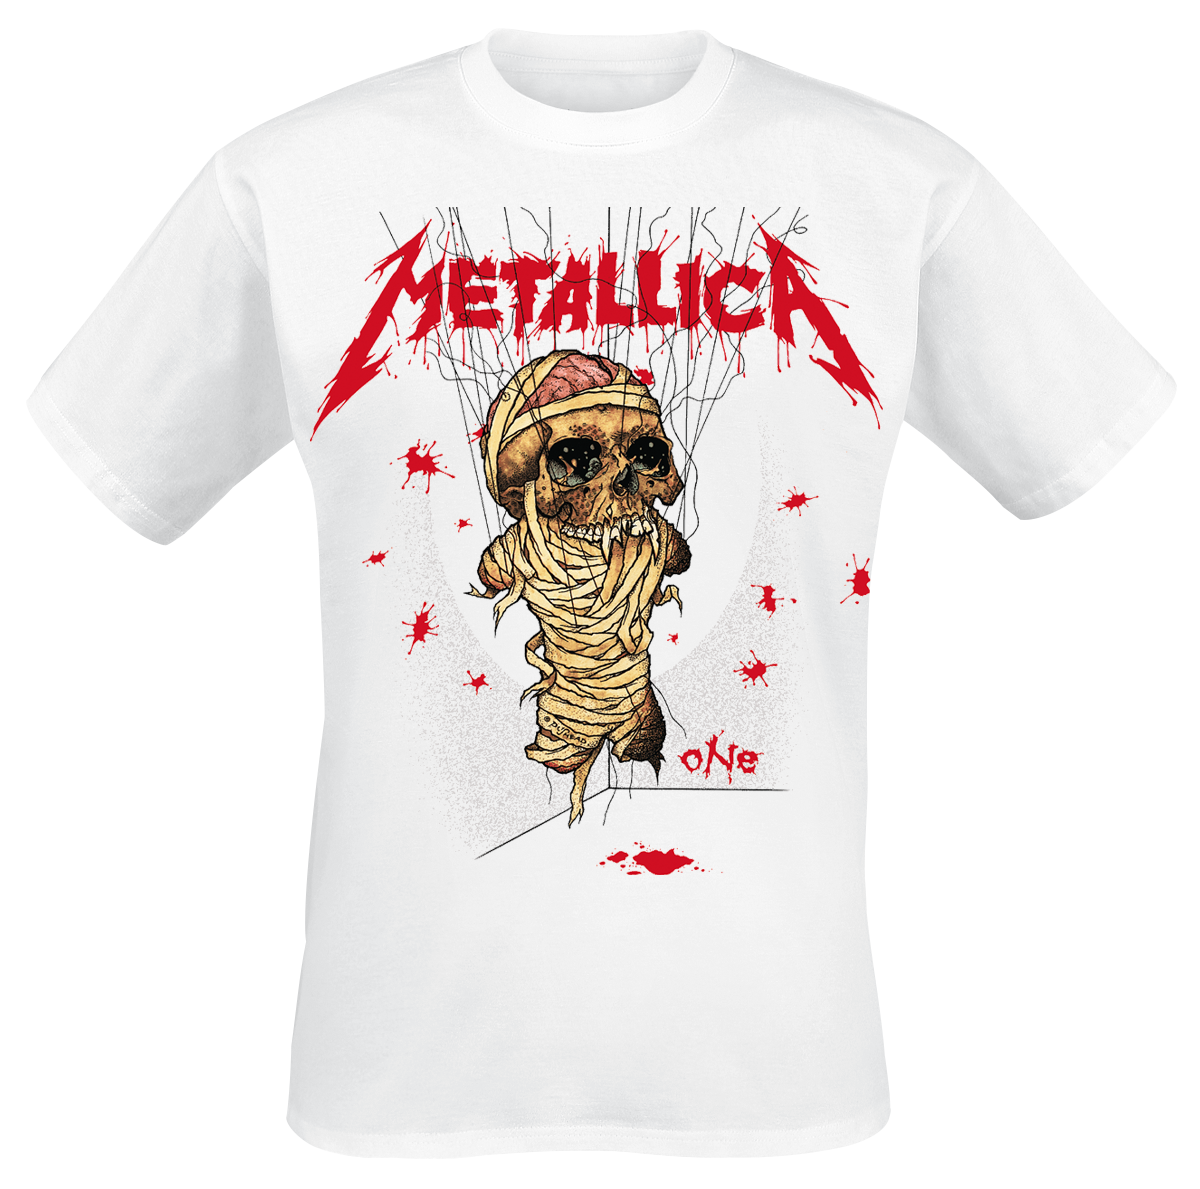 Metallica - One Landmine - T-Shirt - weiß